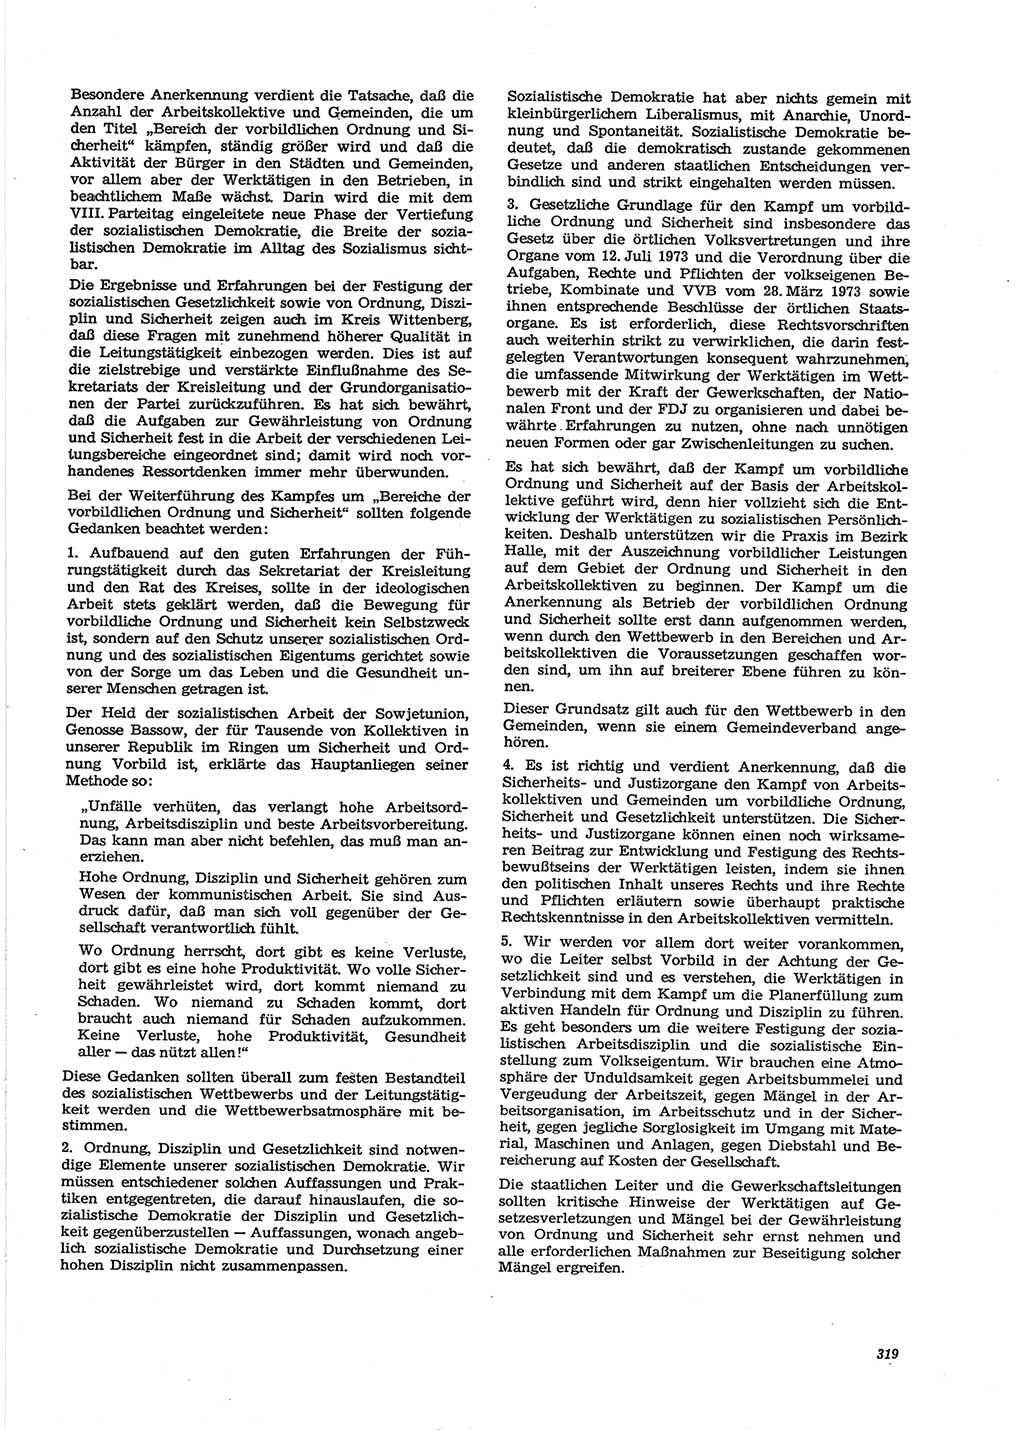 Neue Justiz (NJ), Zeitschrift für Recht und Rechtswissenschaft [Deutsche Demokratische Republik (DDR)], 28. Jahrgang 1974, Seite 319 (NJ DDR 1974, S. 319)